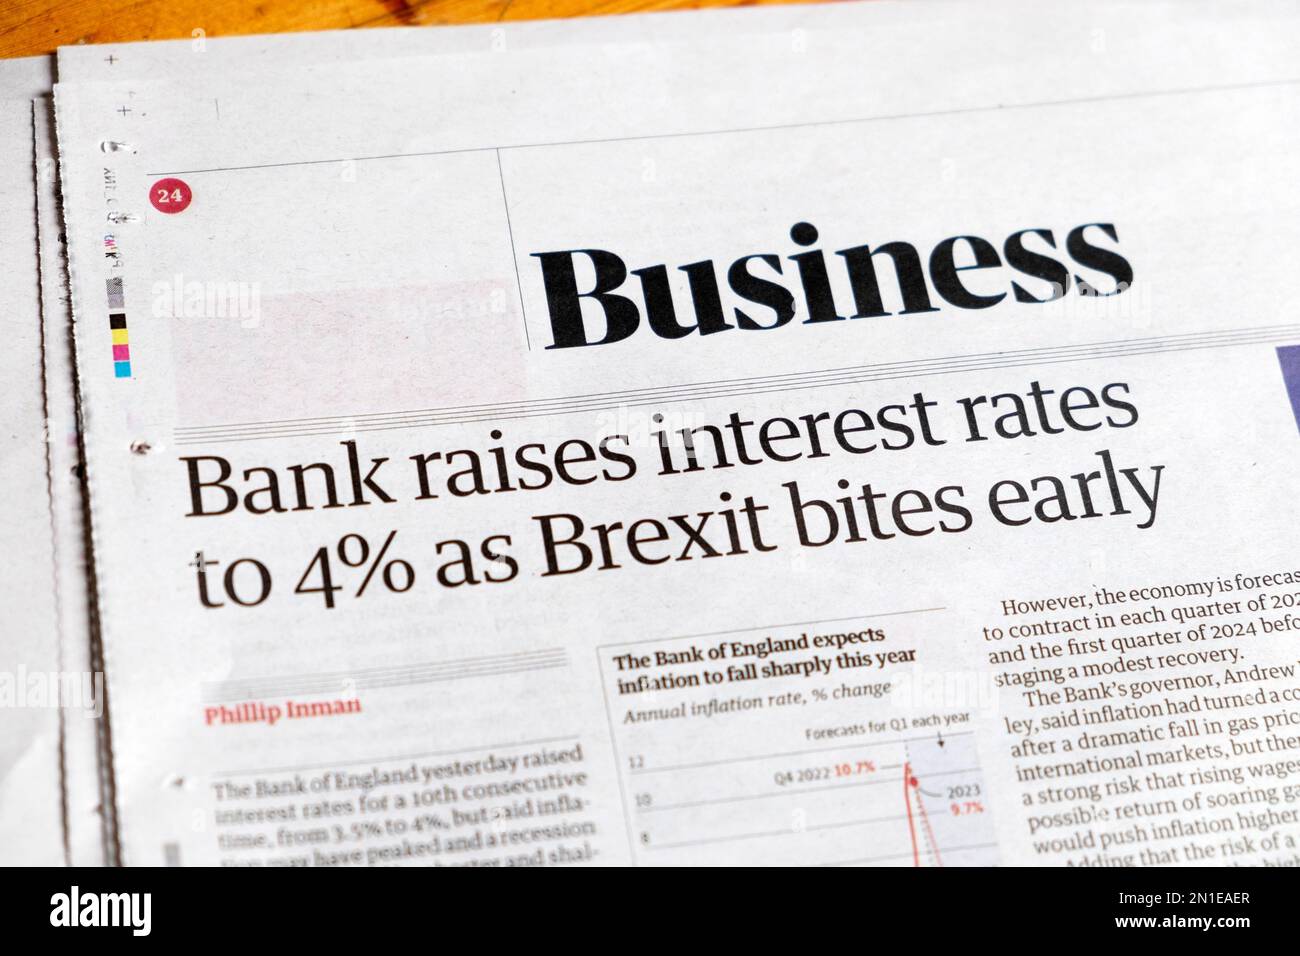 "La Banca alza i tassi di interesse al 4% quando la Brexit morde presto", il titolo del quotidiano Guardian, sezione Business, articolo della Banca d'Inghilterra, febbraio 2023 Londra UK Foto Stock